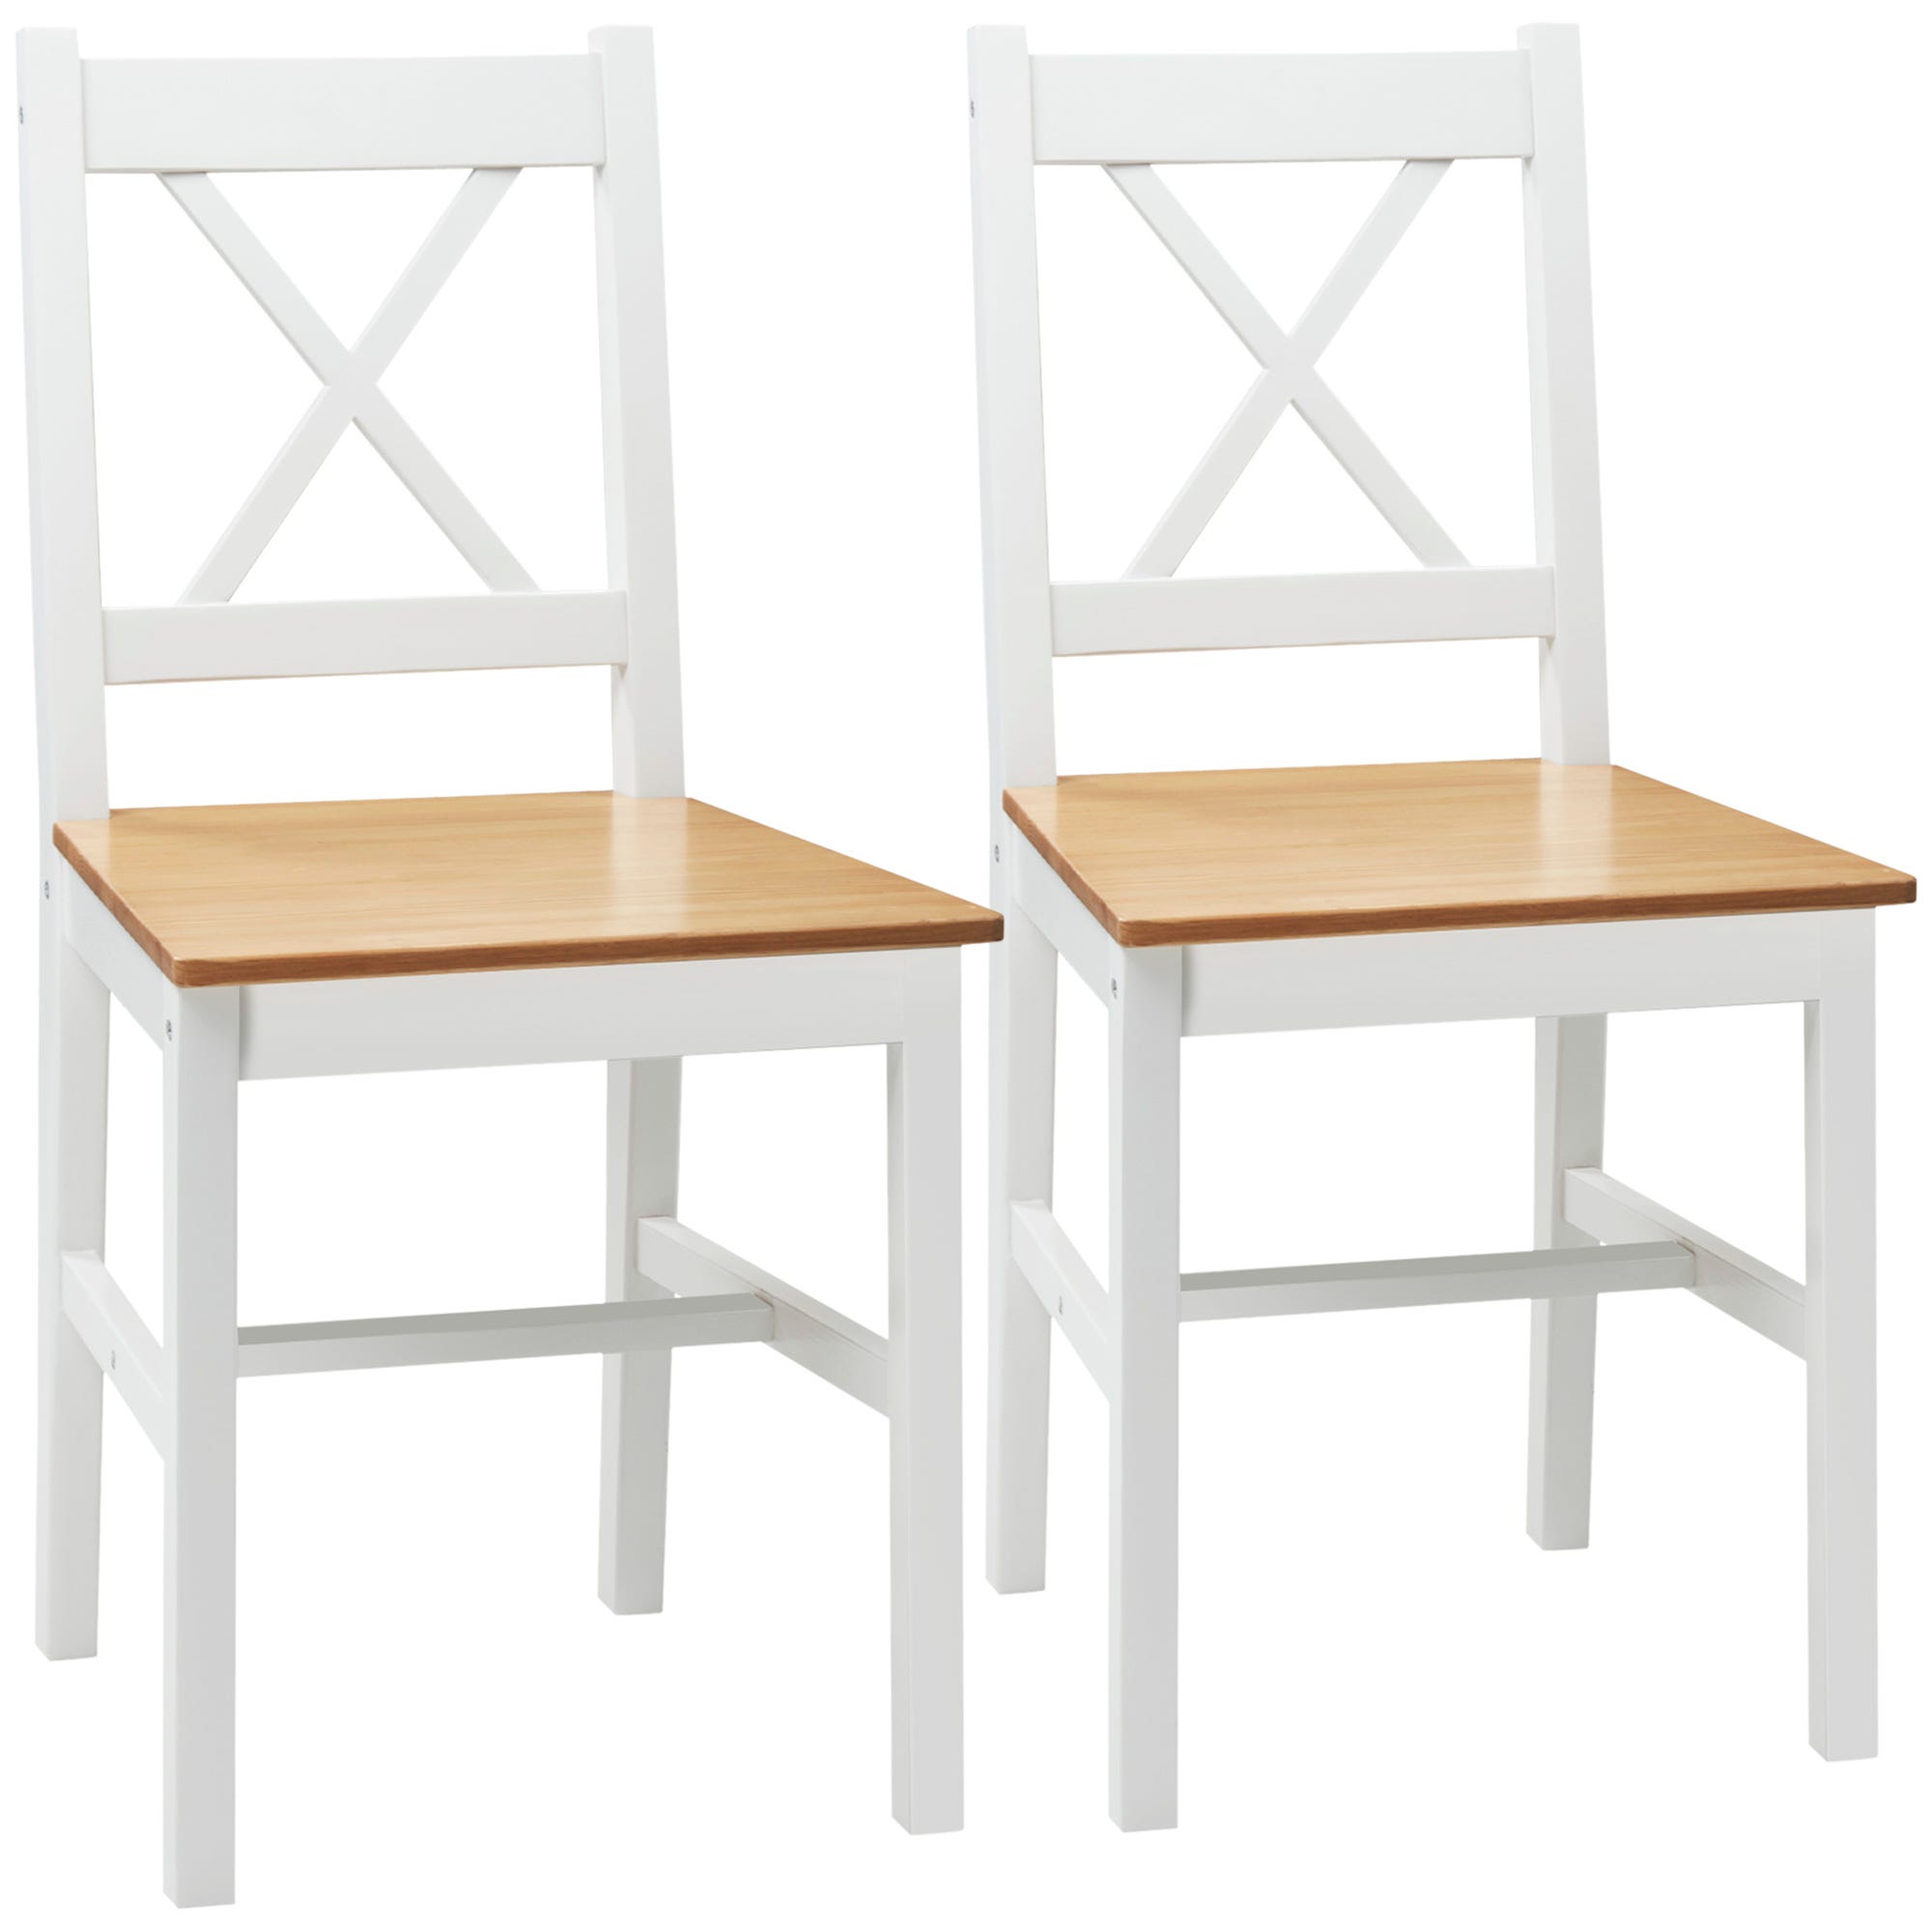 Lot de 2 chaises de salle à manger en bois blanc BURGES